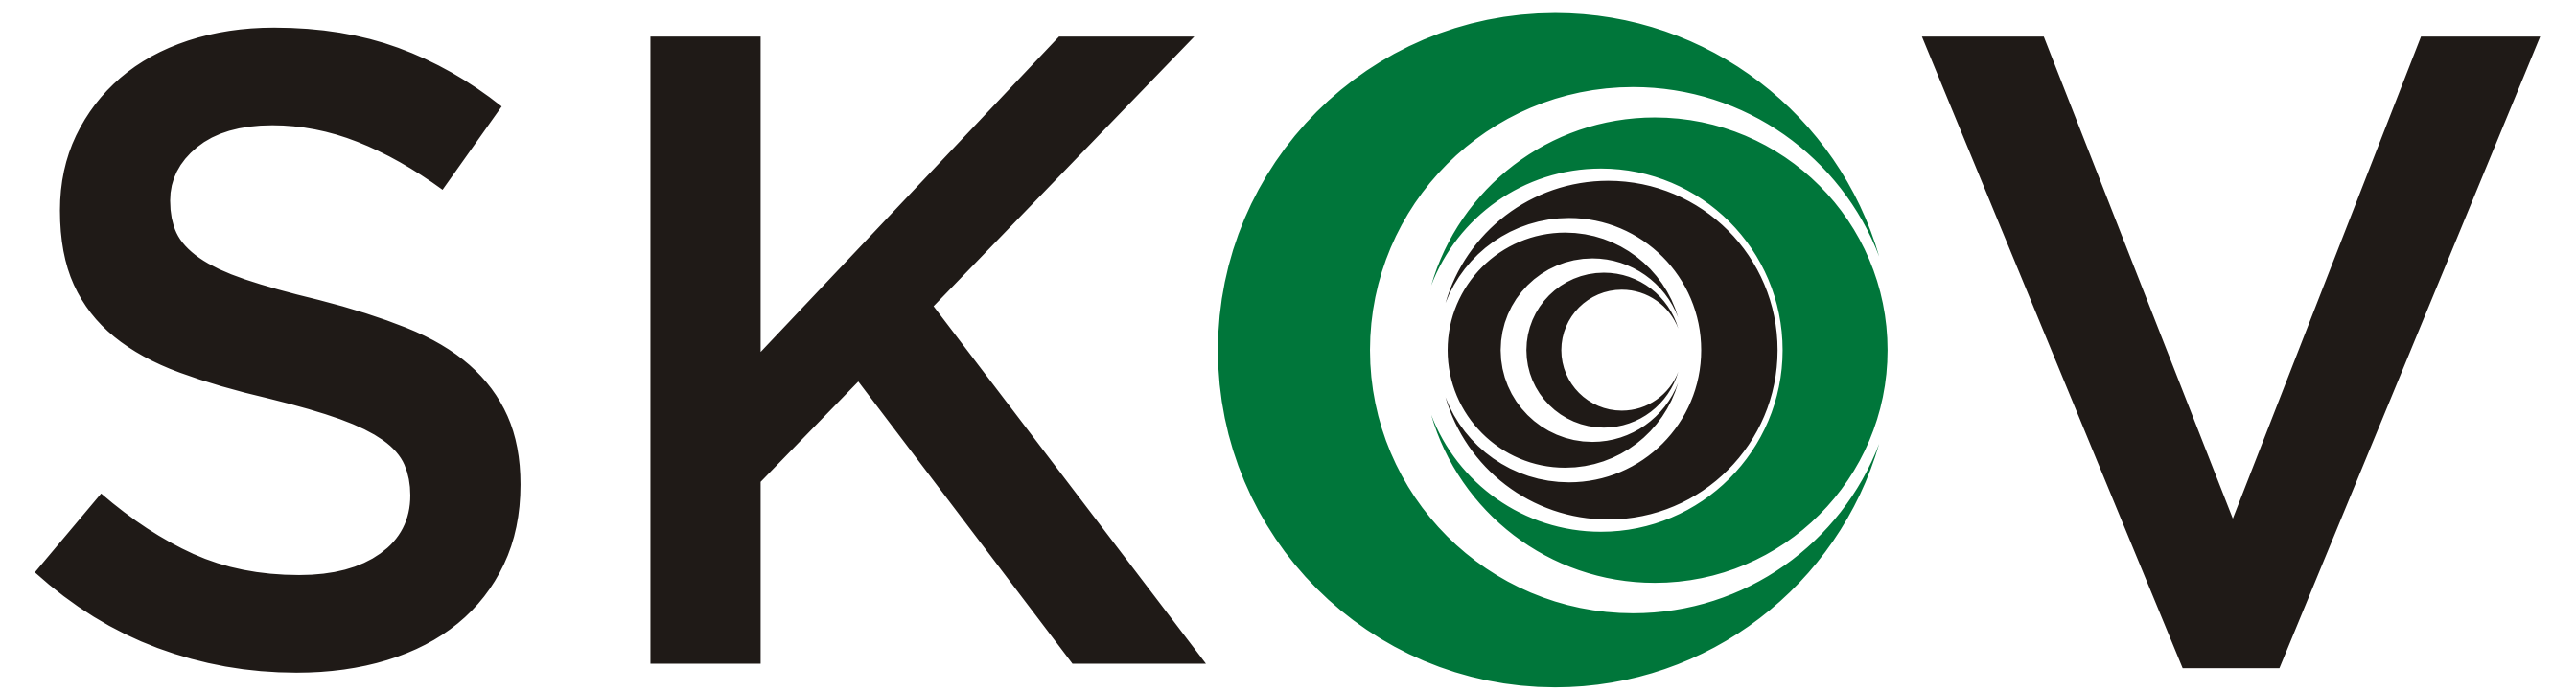 Henrik Skov logo_2800x800